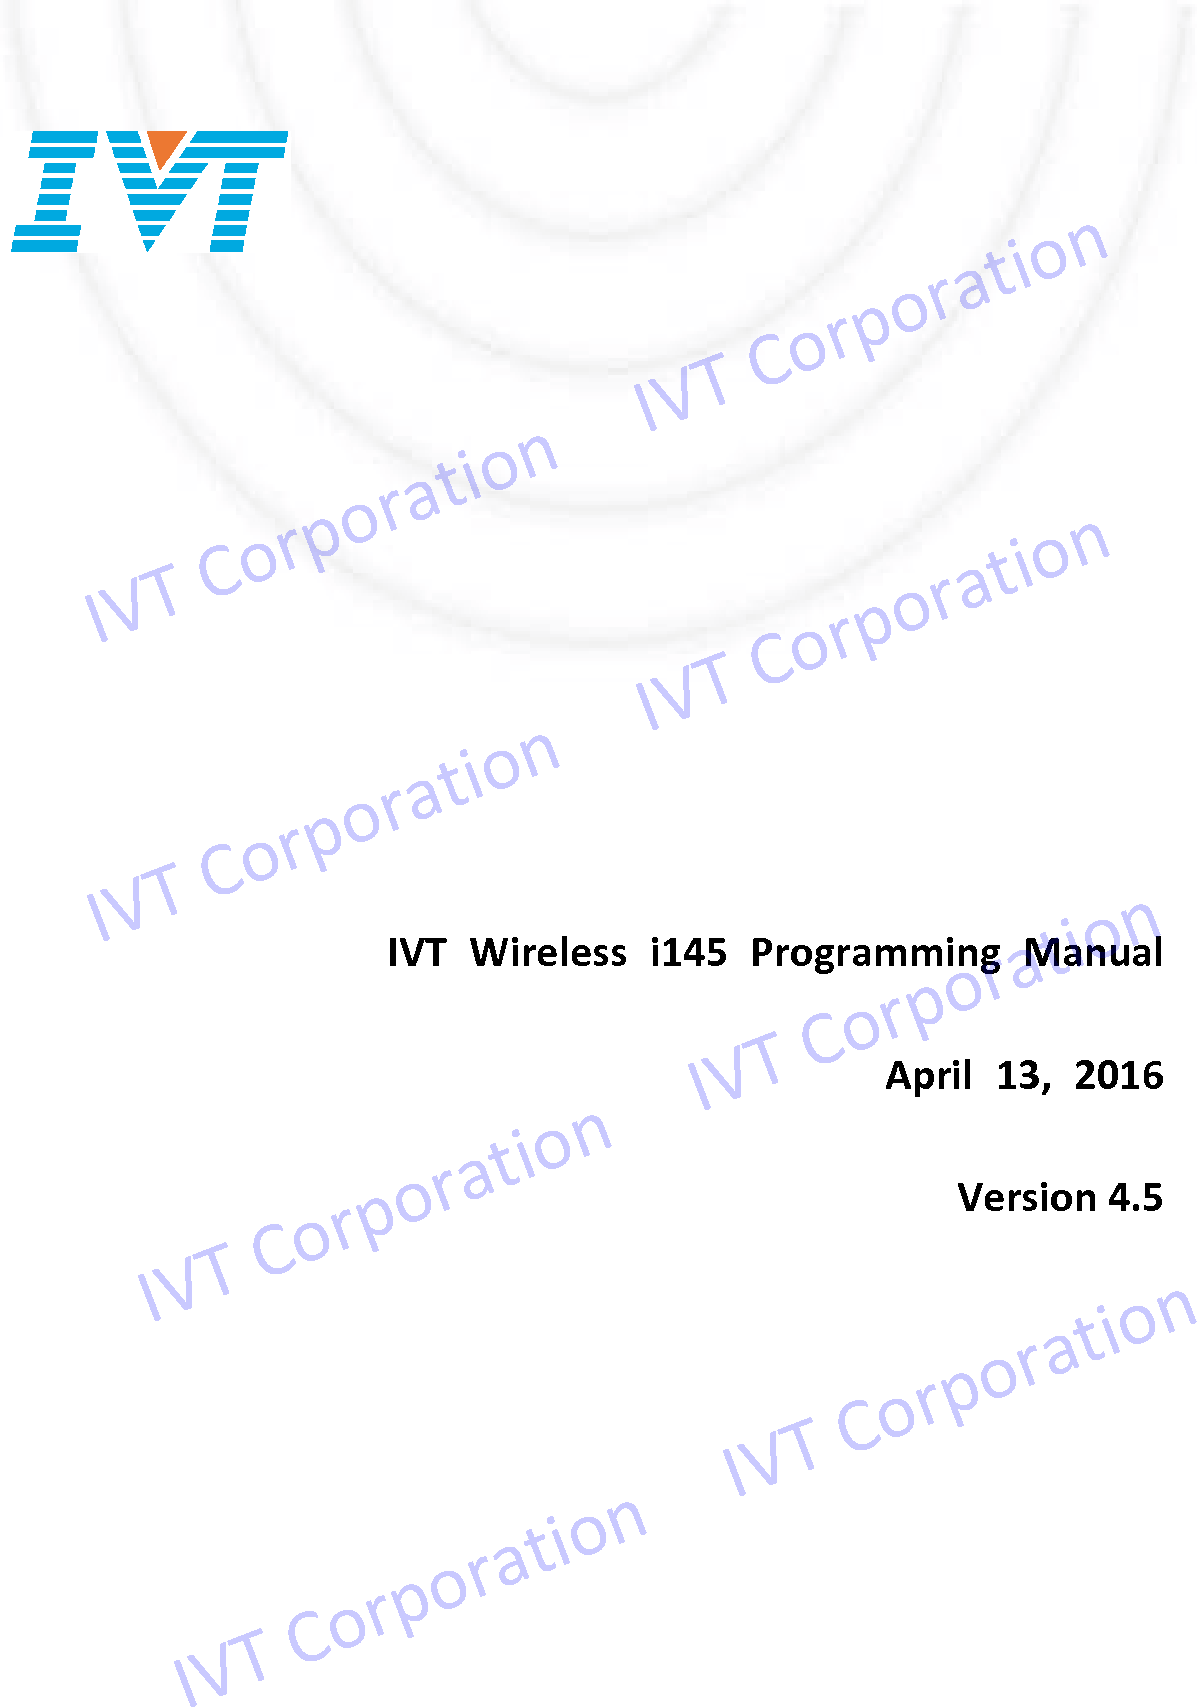                   IVT Wireless i145 Programming Manual April 13, 2016 Version 4.5                        IVT Corporation     IVT Corporation                    IVT Corporation     IVT Corporation                IVT Corporation     IVT Corporation          IVT Corporation     IVT Corporation 